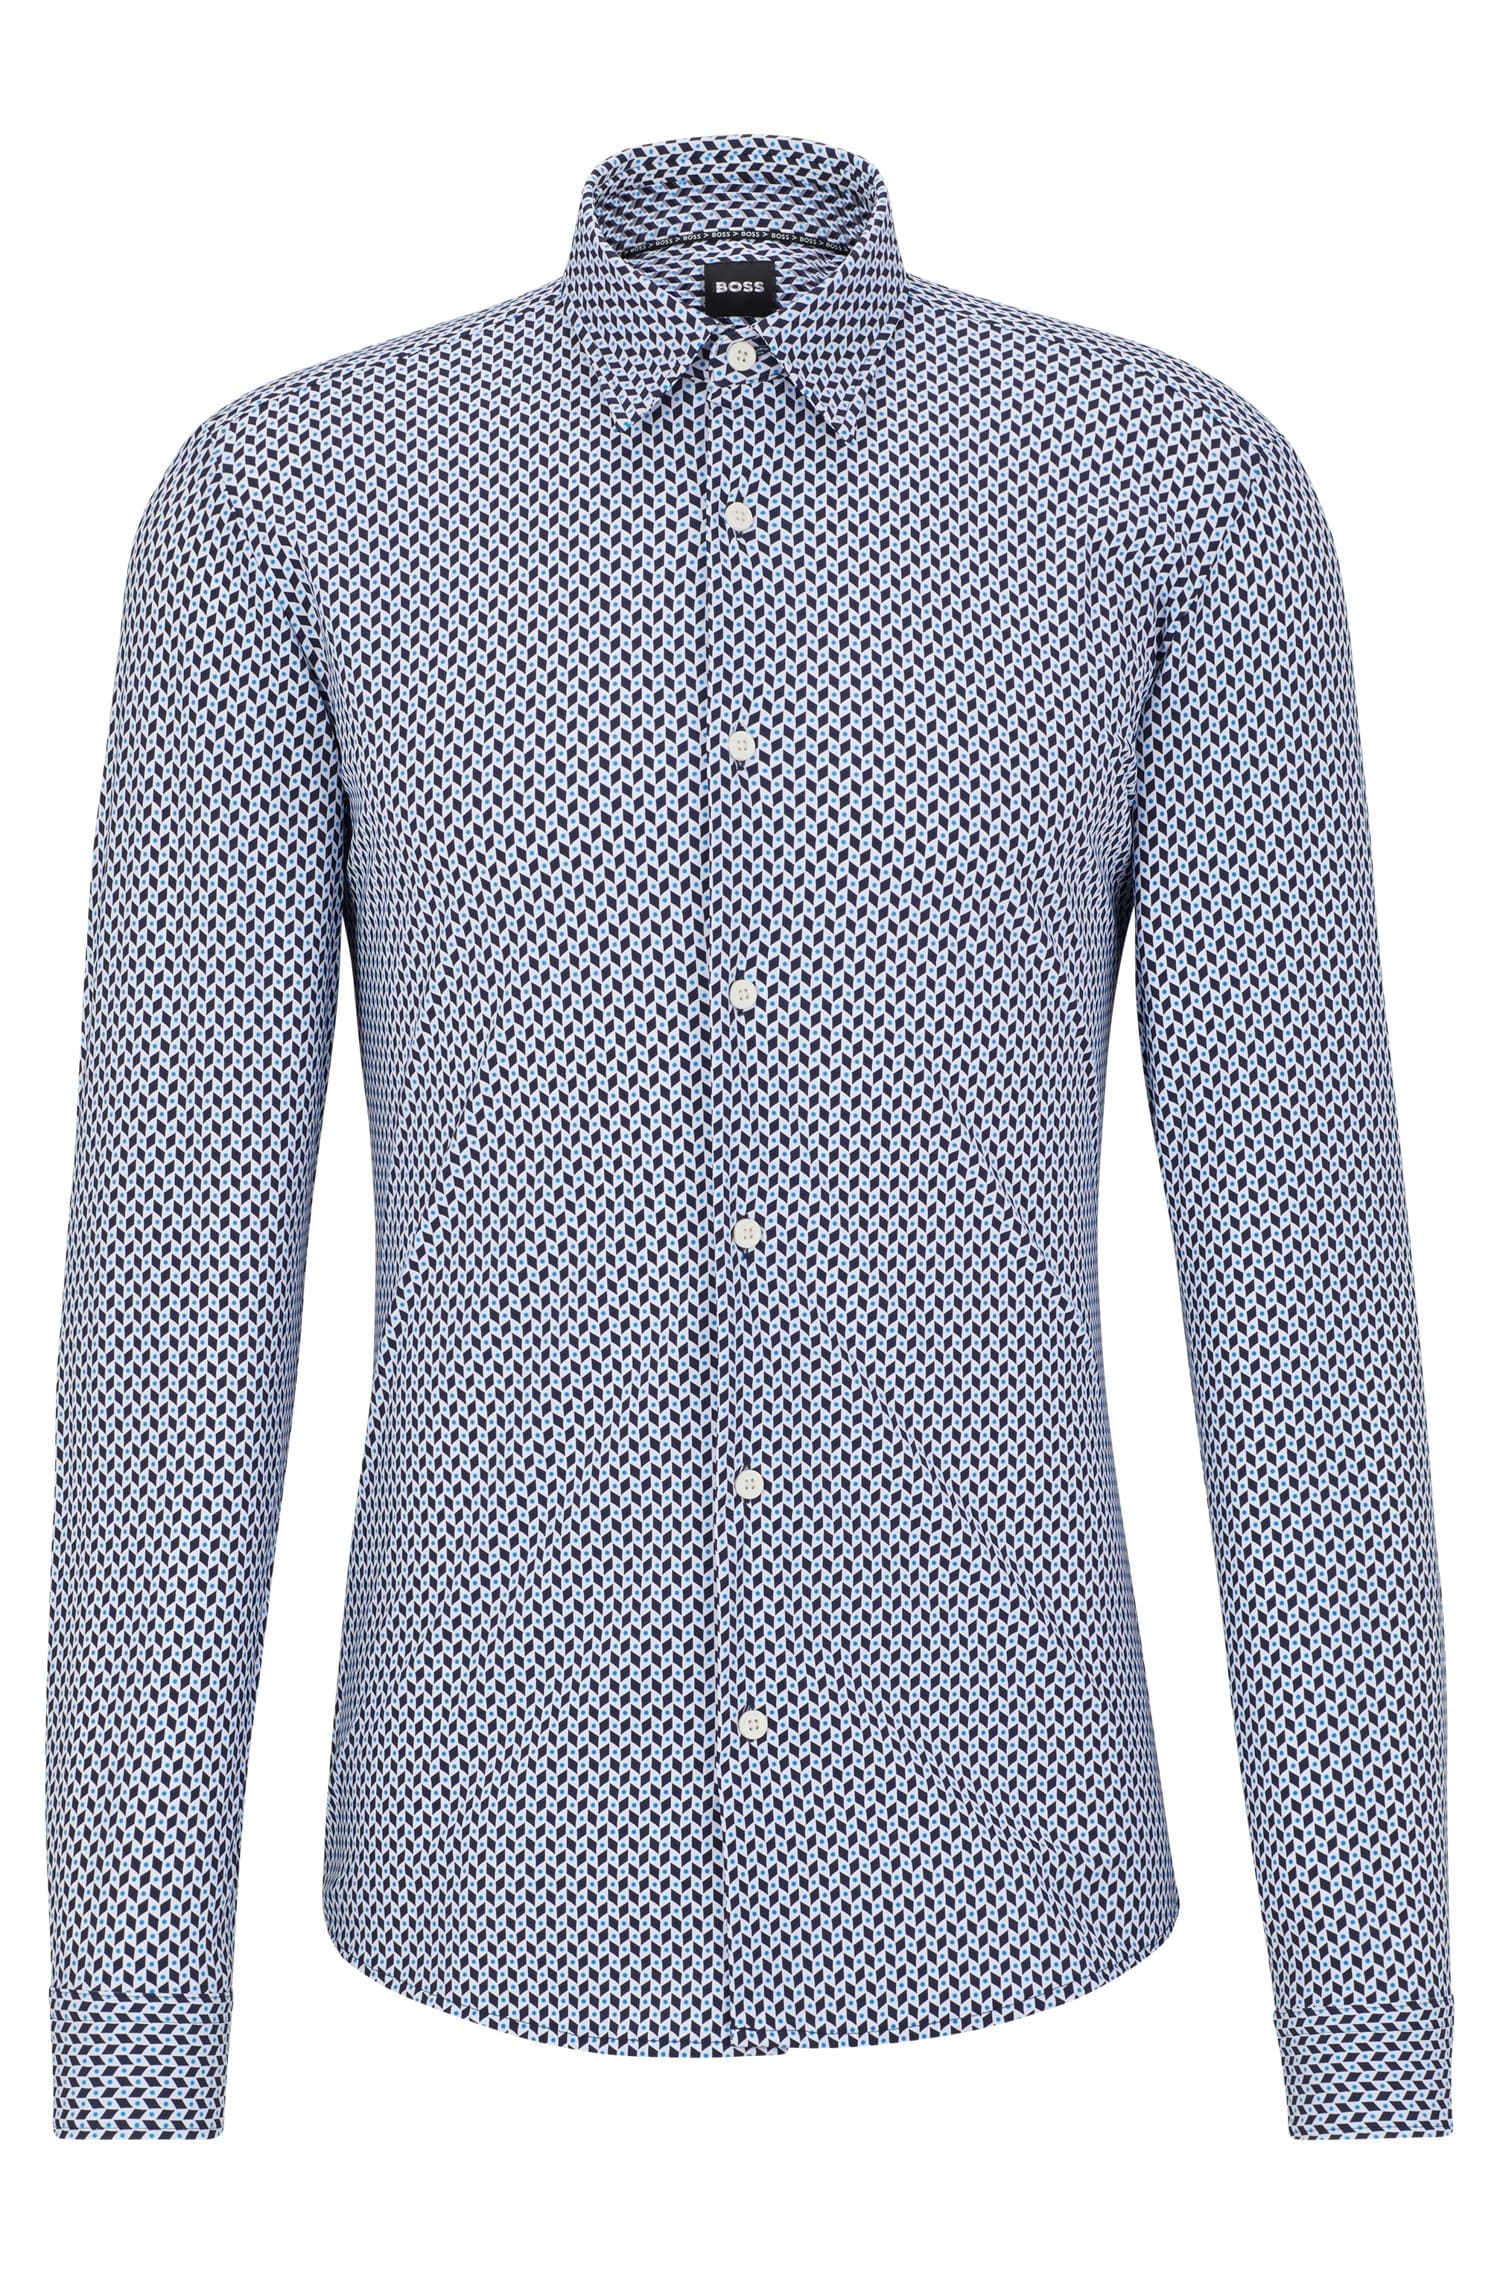 цена Приталенная рубашка Hugo Boss из эластичной ткани с геометрическим принтом Performance, голубой/синий